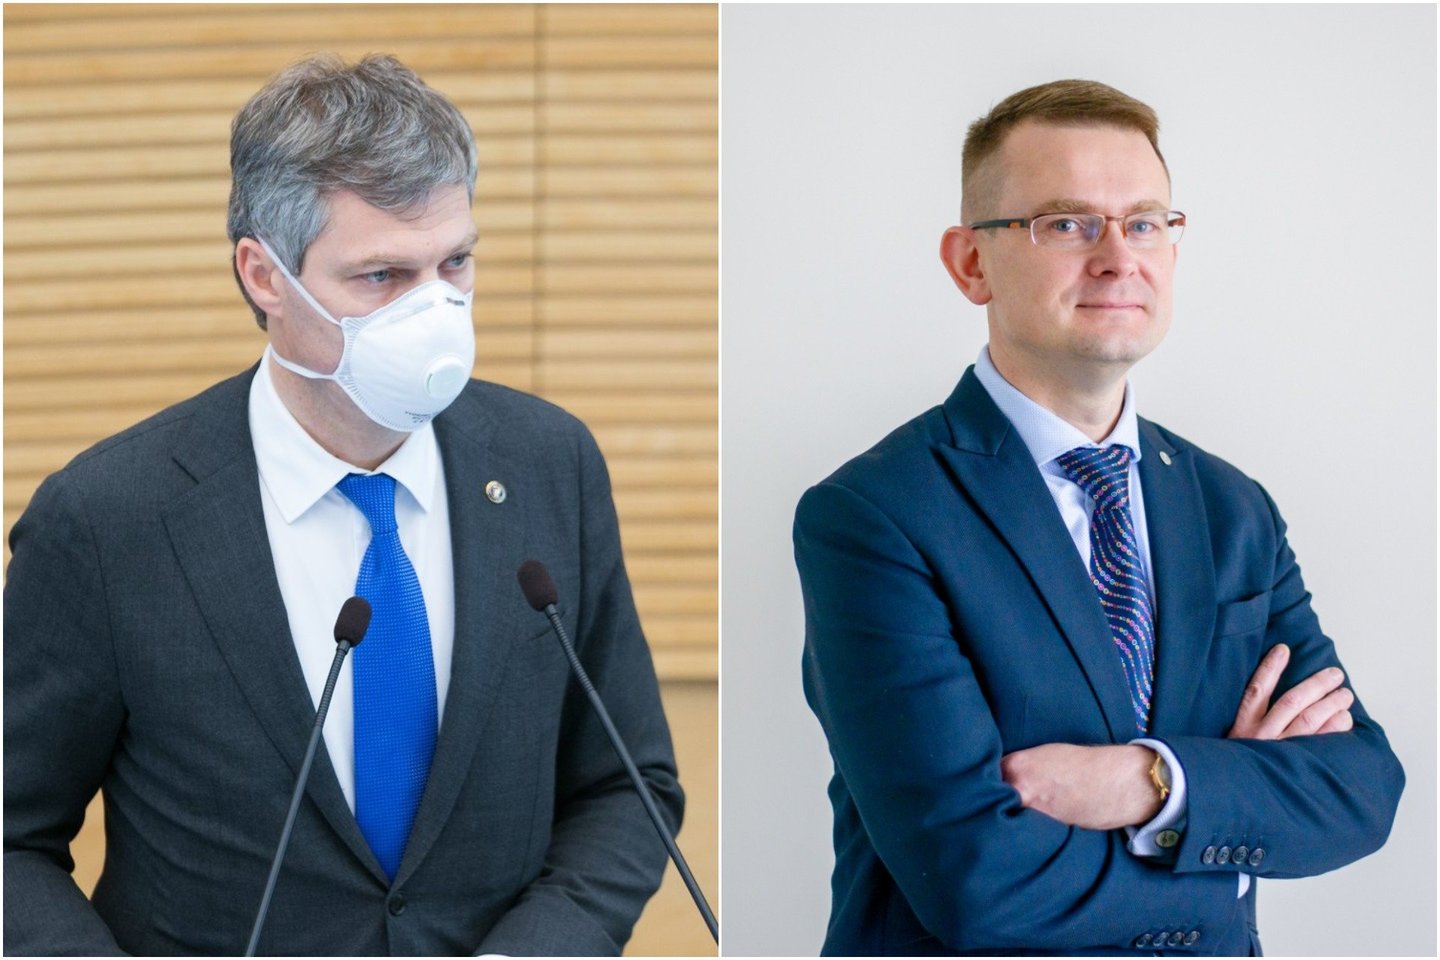 Seimas gana darniai balsavo už tai, kad D.Jauniškis (kairėje) toliau vadovautų VSD, tačiau nesutiko atleisti valstybės kontrolieriaus A.Dulkio.<br> lrytas.lt koliažas.